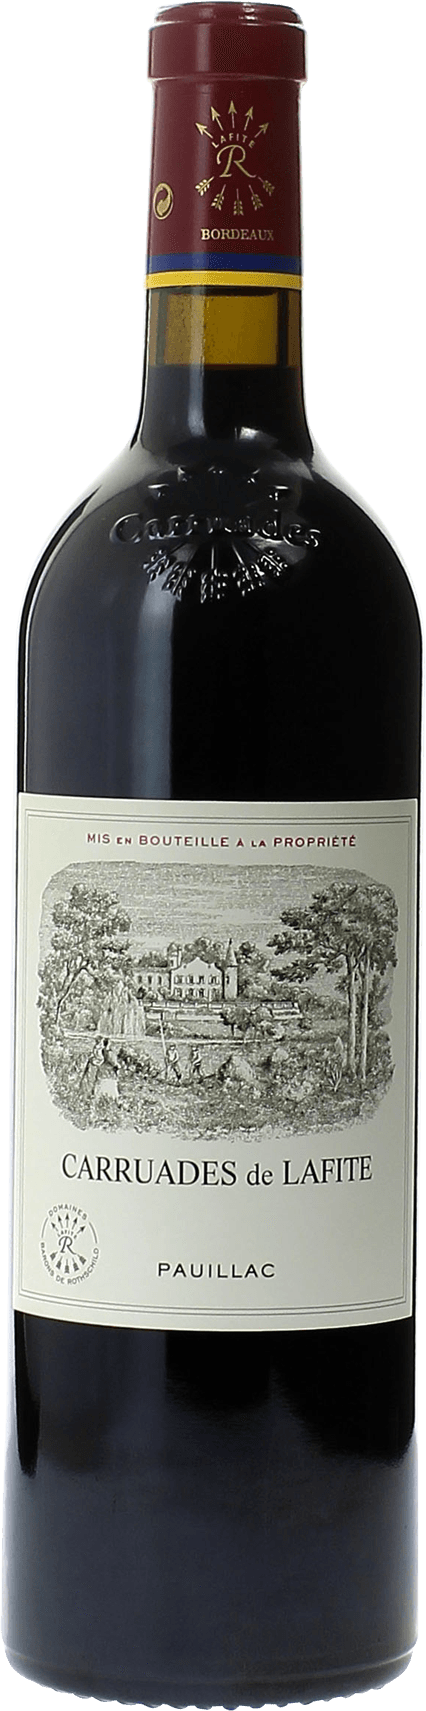 Carruades de lafite 1996 2me vin de LAFITE ROTHSCHILD Pauillac, Bordeaux rouge